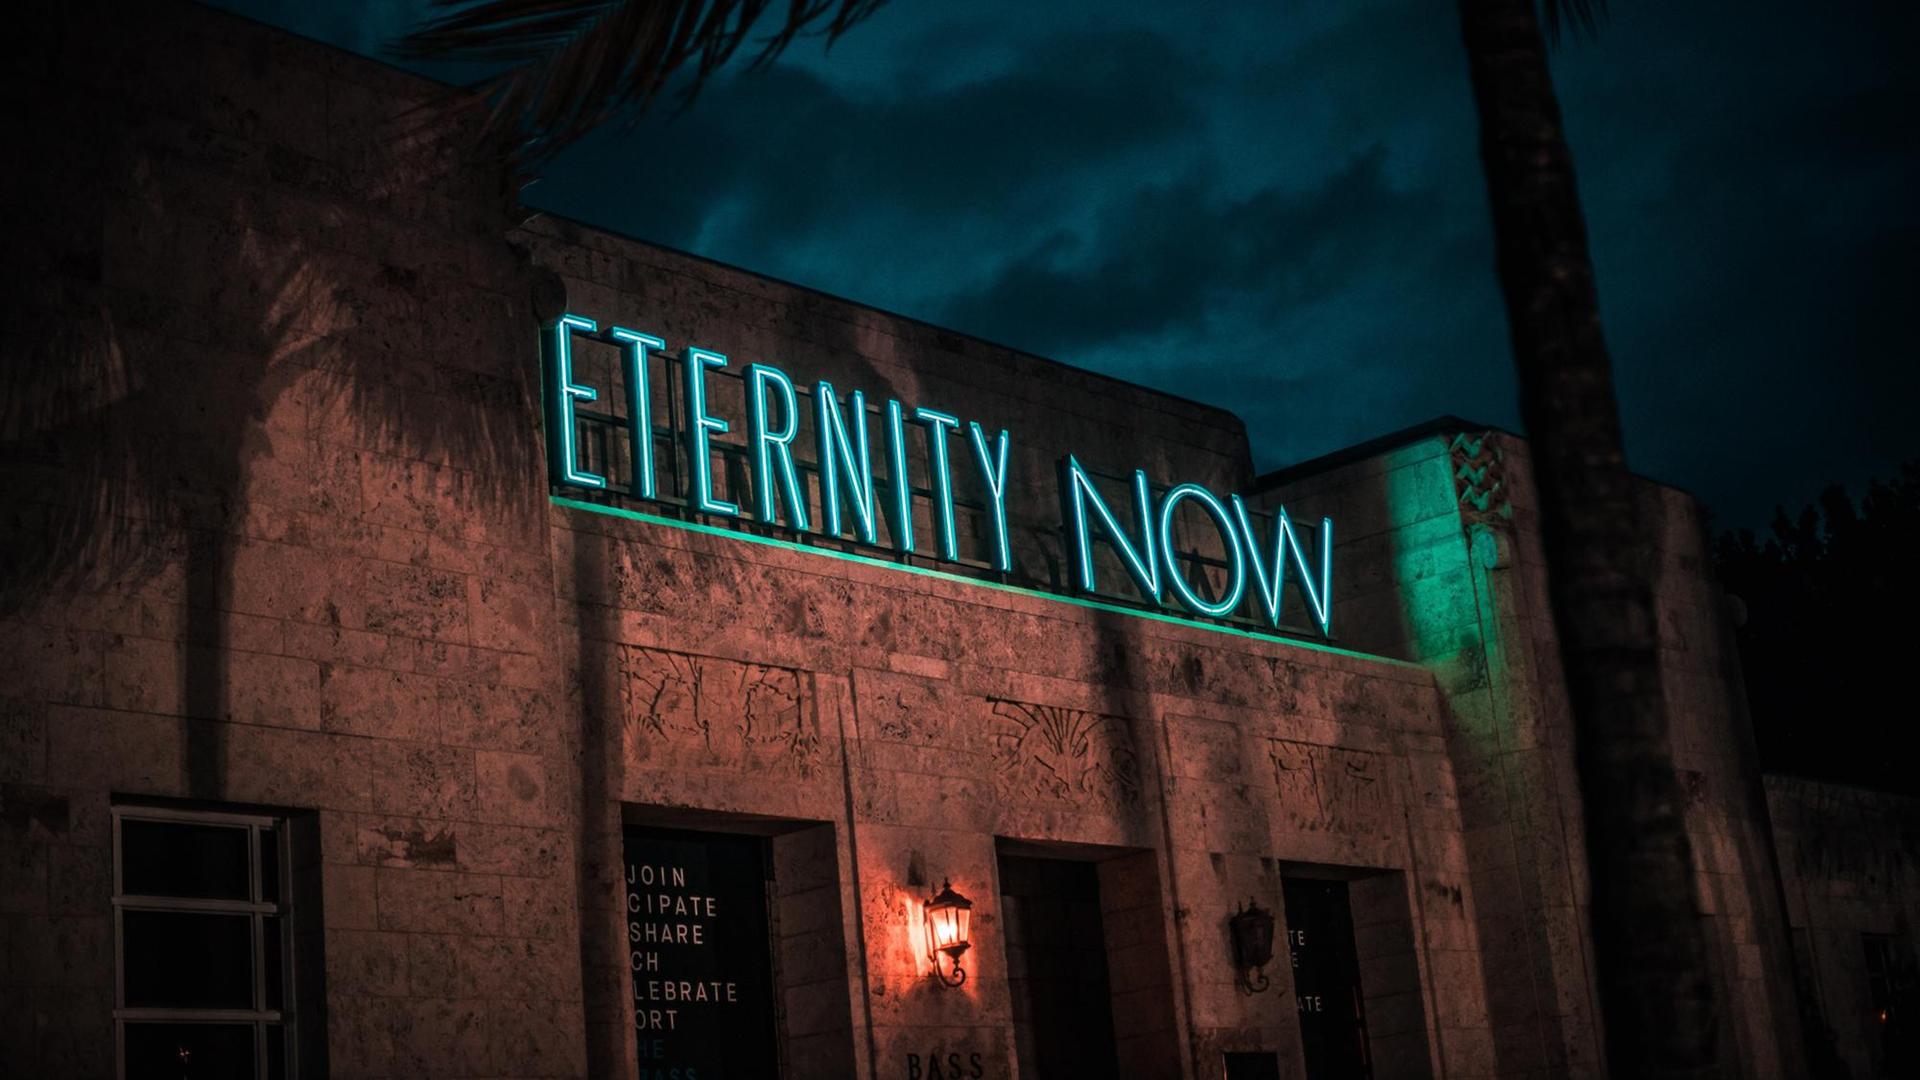 Gebäude bei Nacht mit Leuchtschrift "Eternity now"